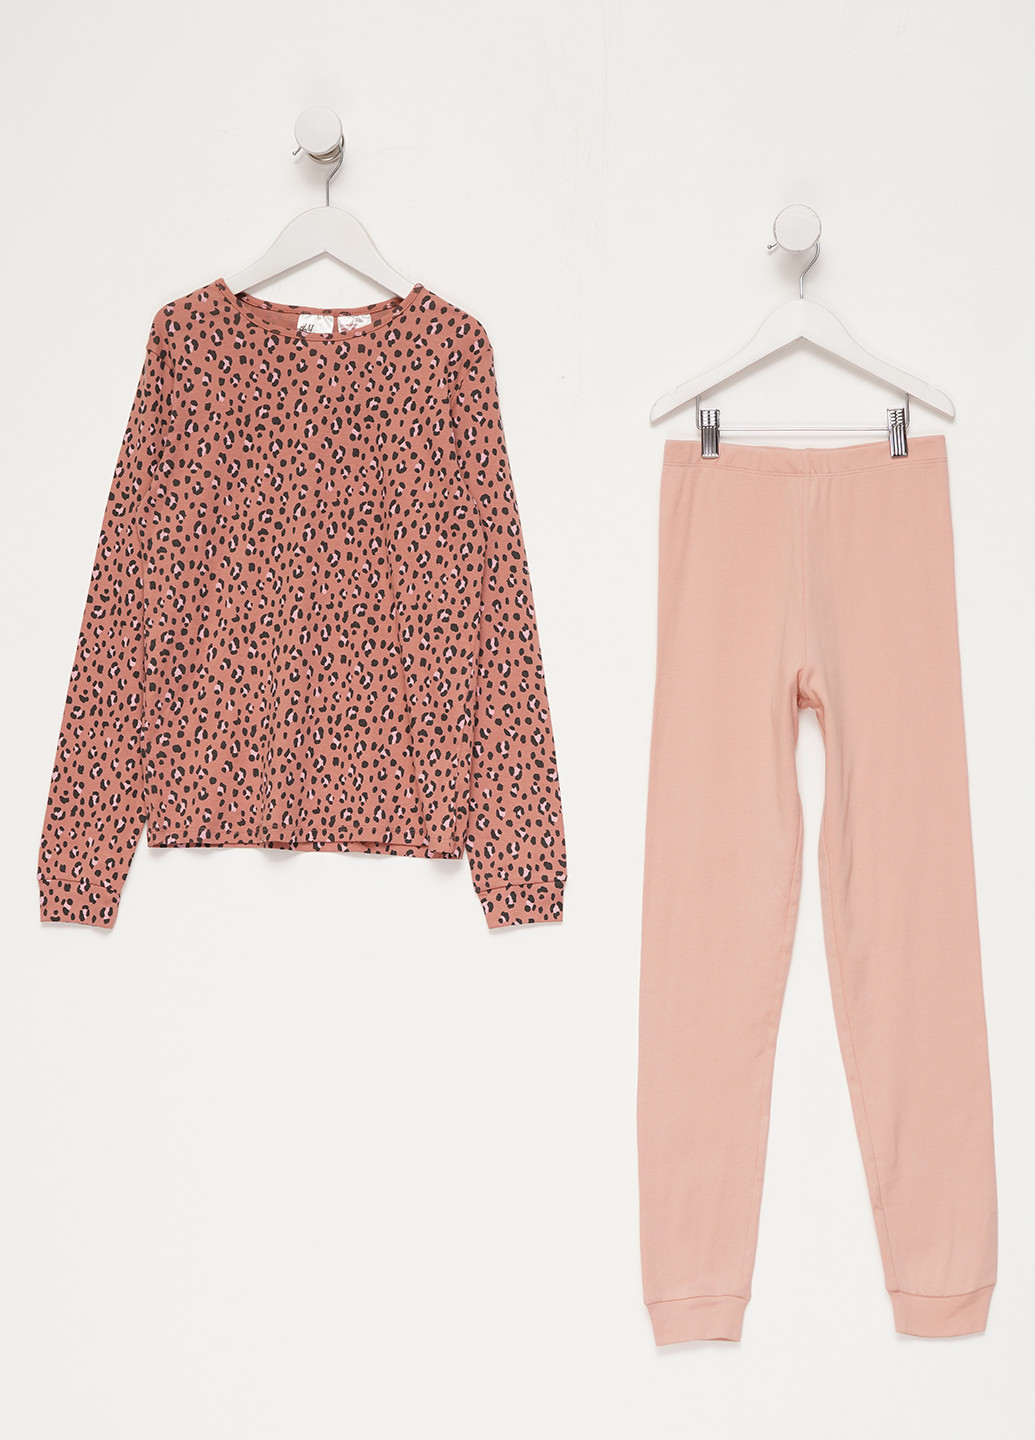 Персиковая всесезон пижама (лонгслив, брюки) лонгслив + брюки H&M